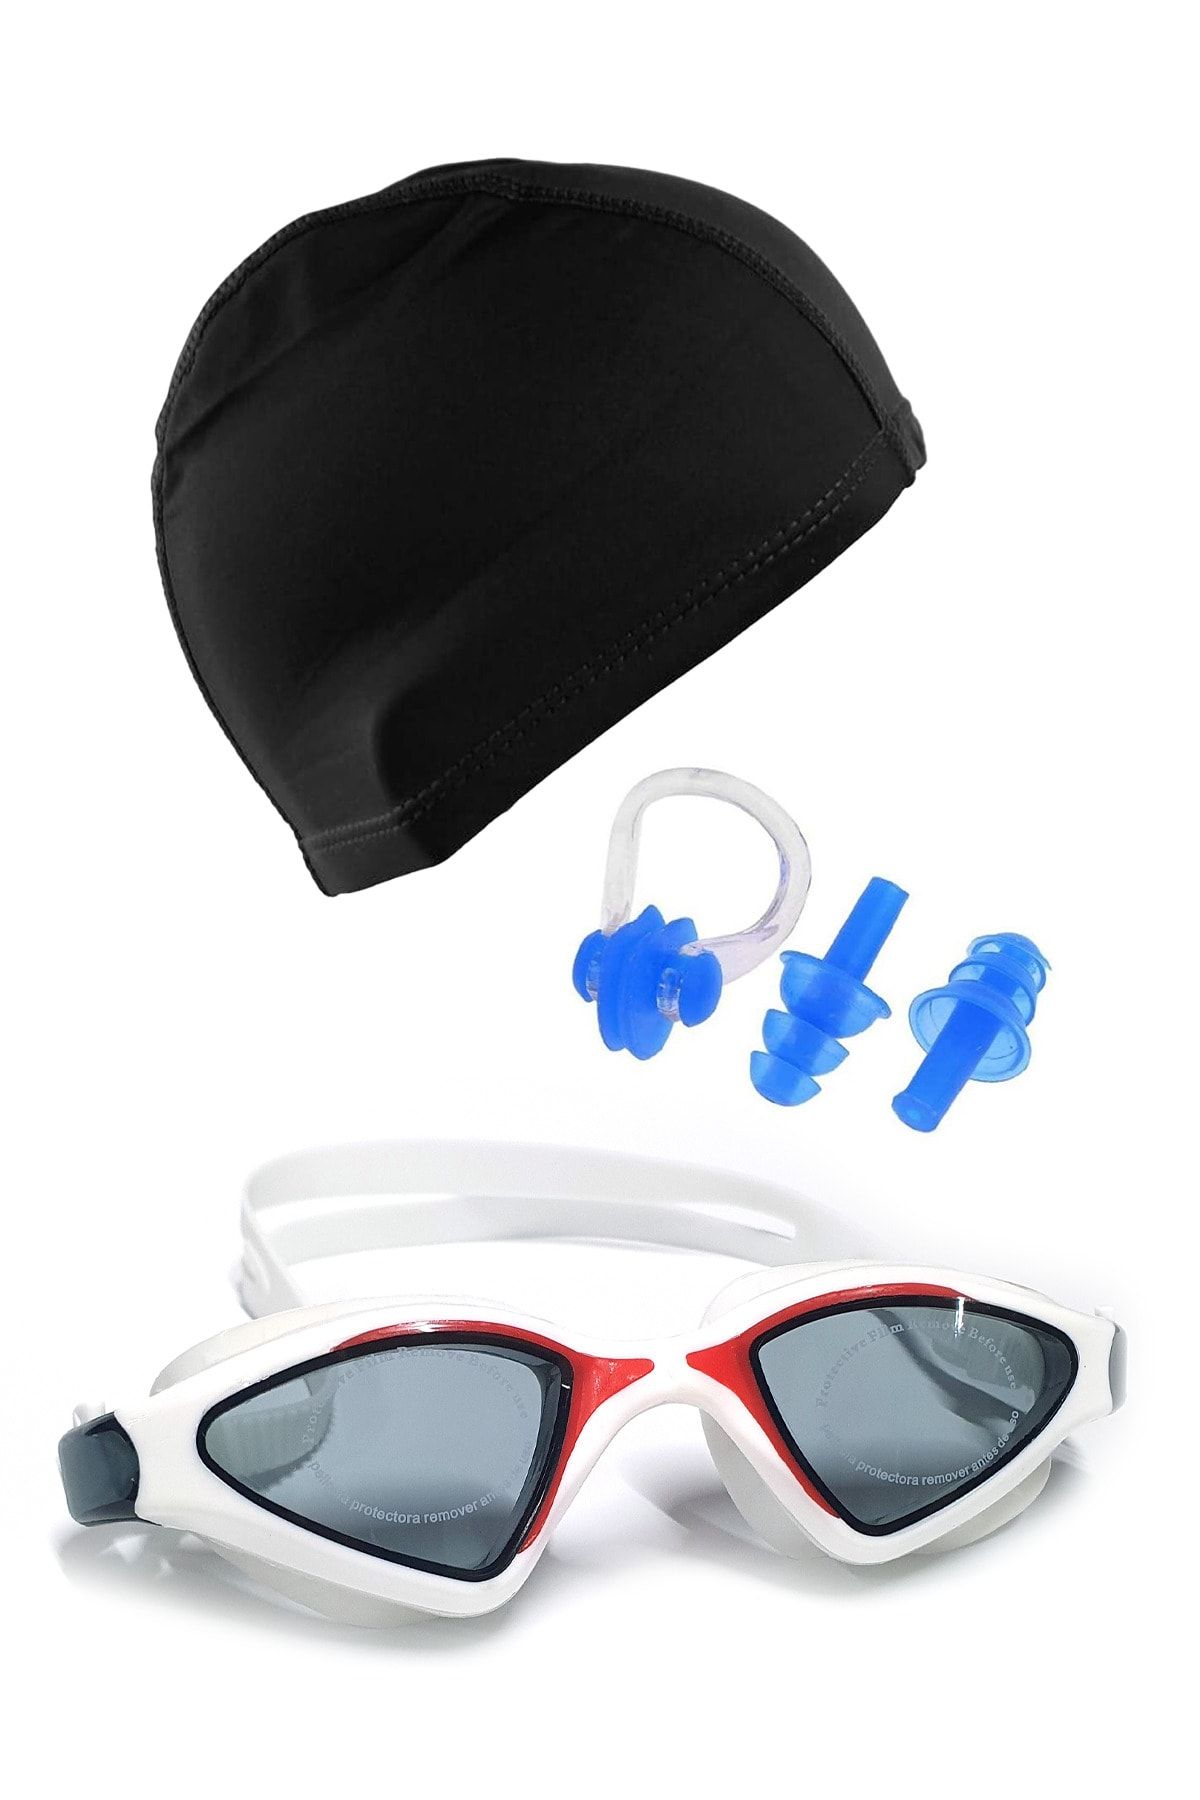 Tosima Profesyonel Silikon Yüzücü Gözlüğü Ve Likra Bone Kulak Tıkacı Burun Klipsi Seti Havuz Seti